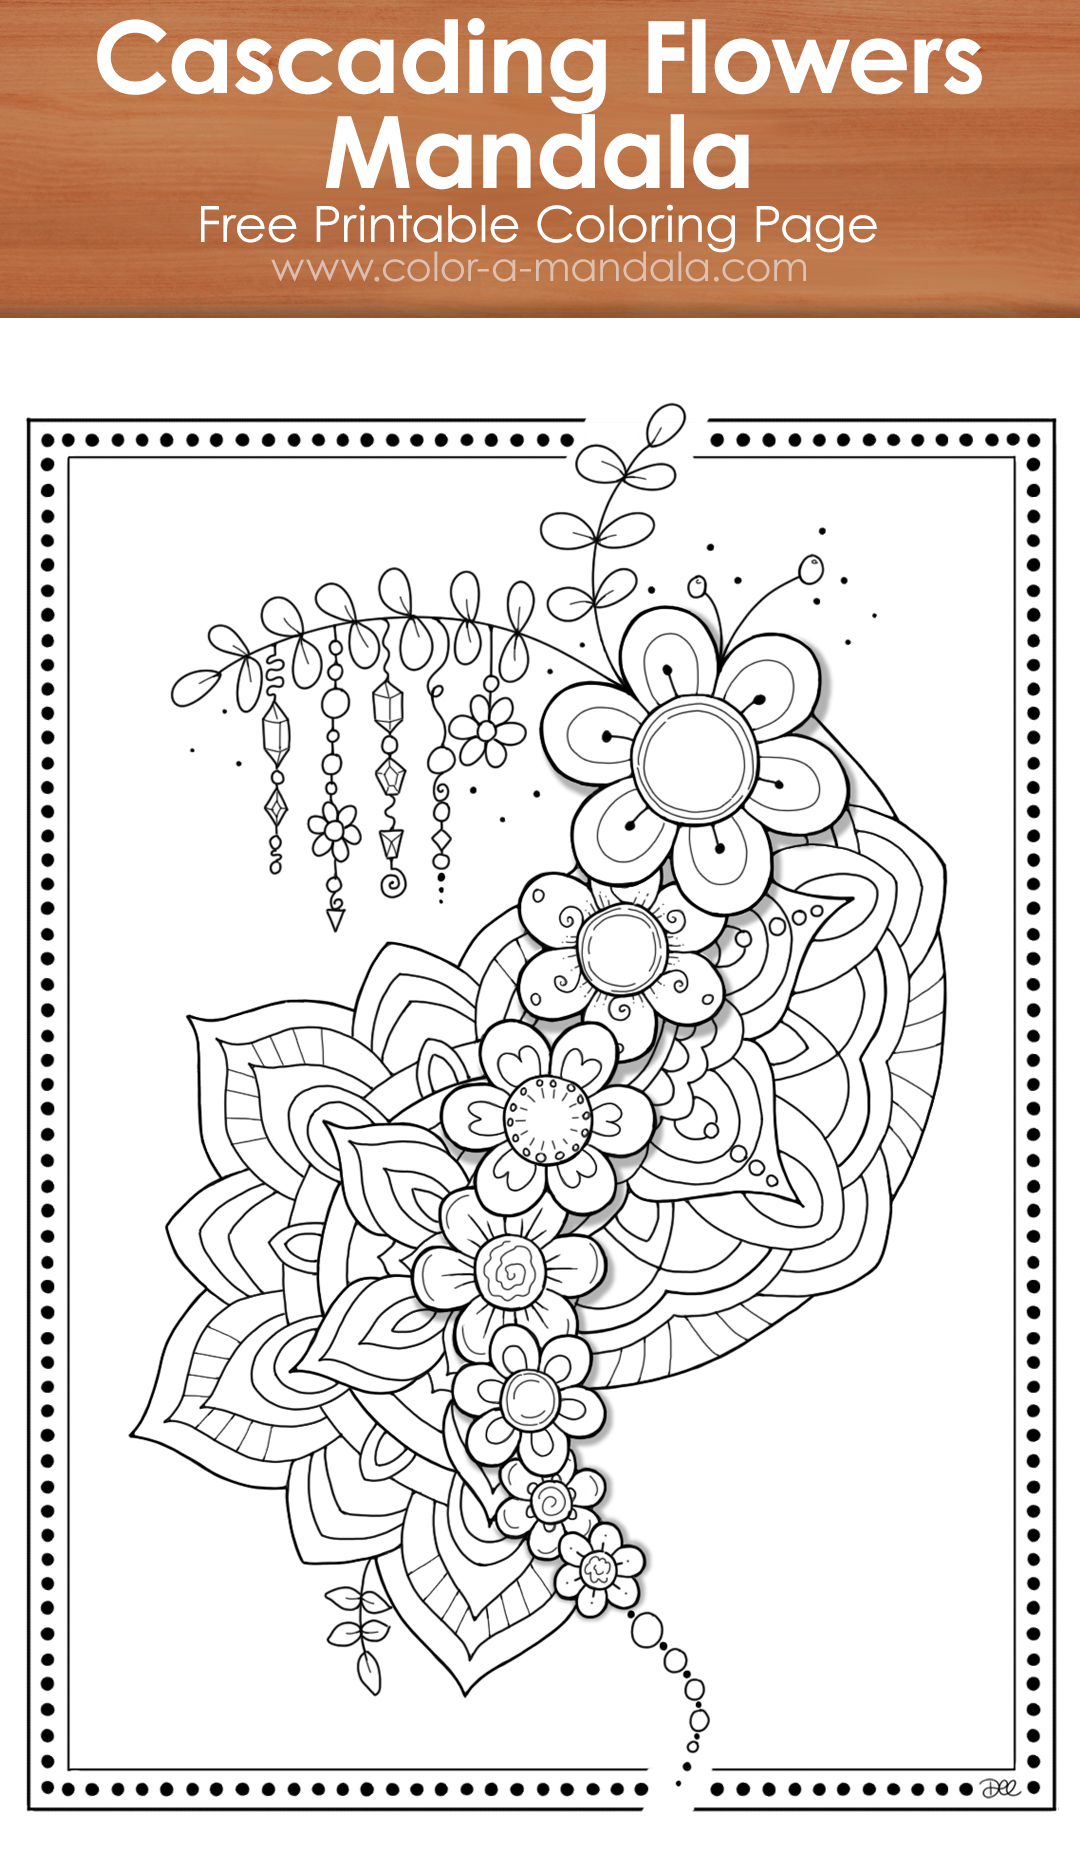 Cascading Flowers Mandala image